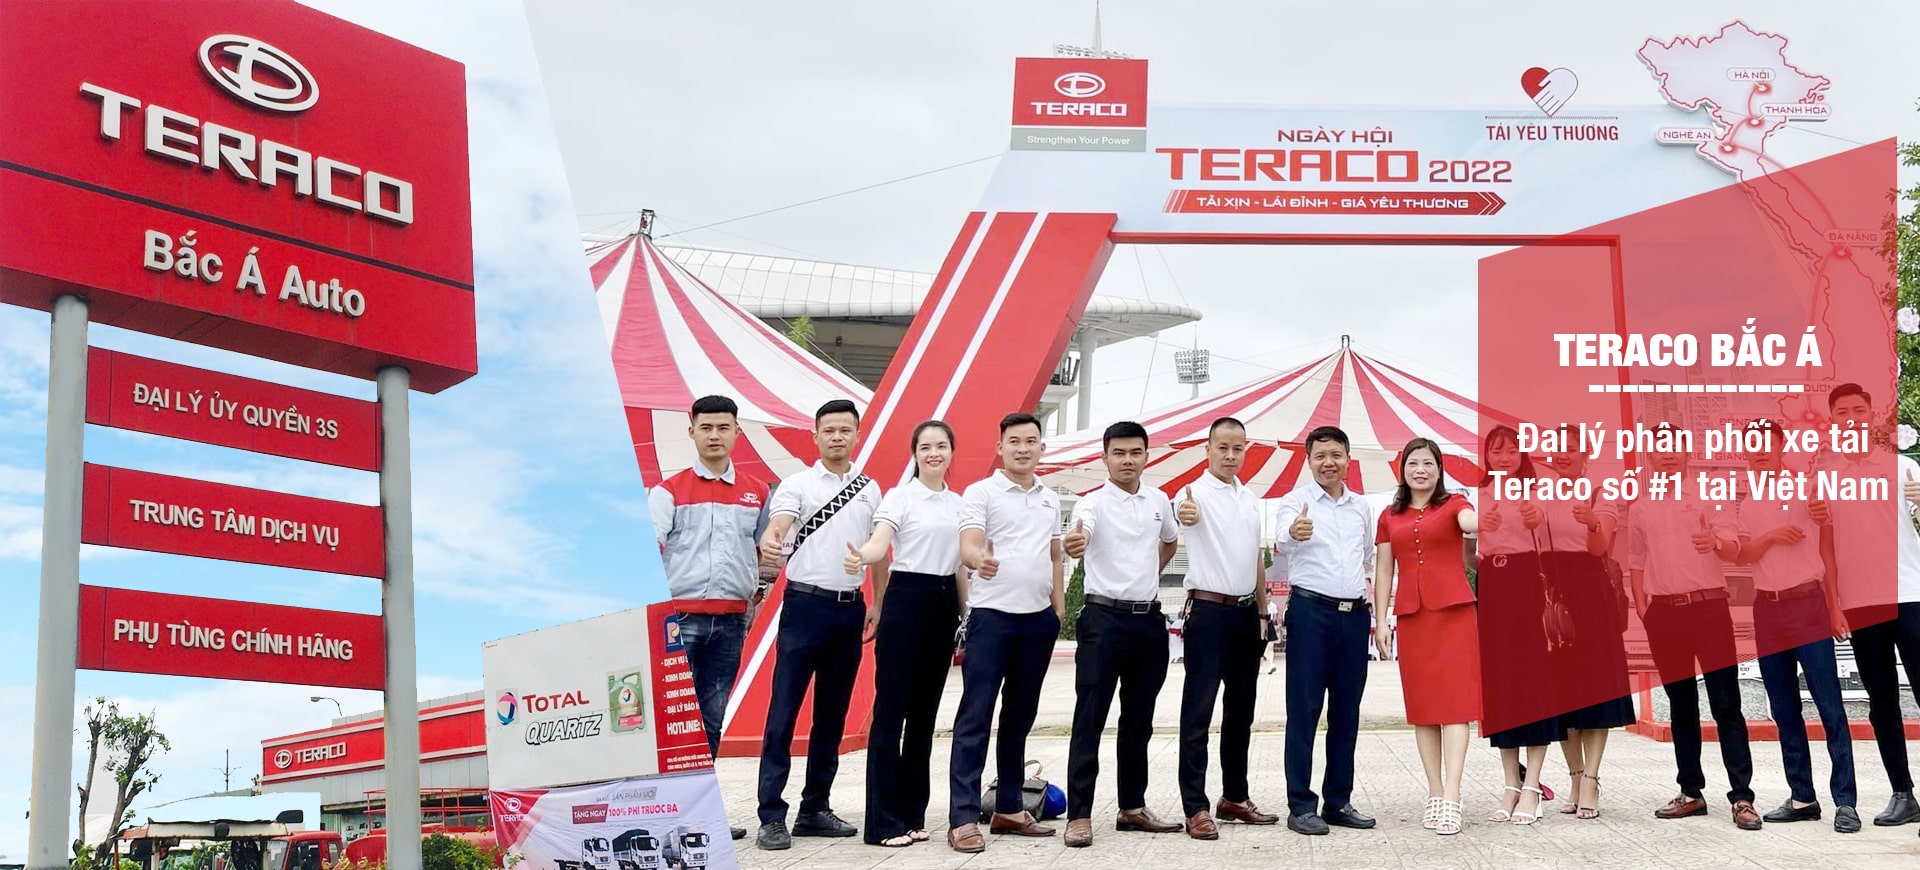 Đại lý bán xe tải Tera 100 uy tín tại Hà Nội